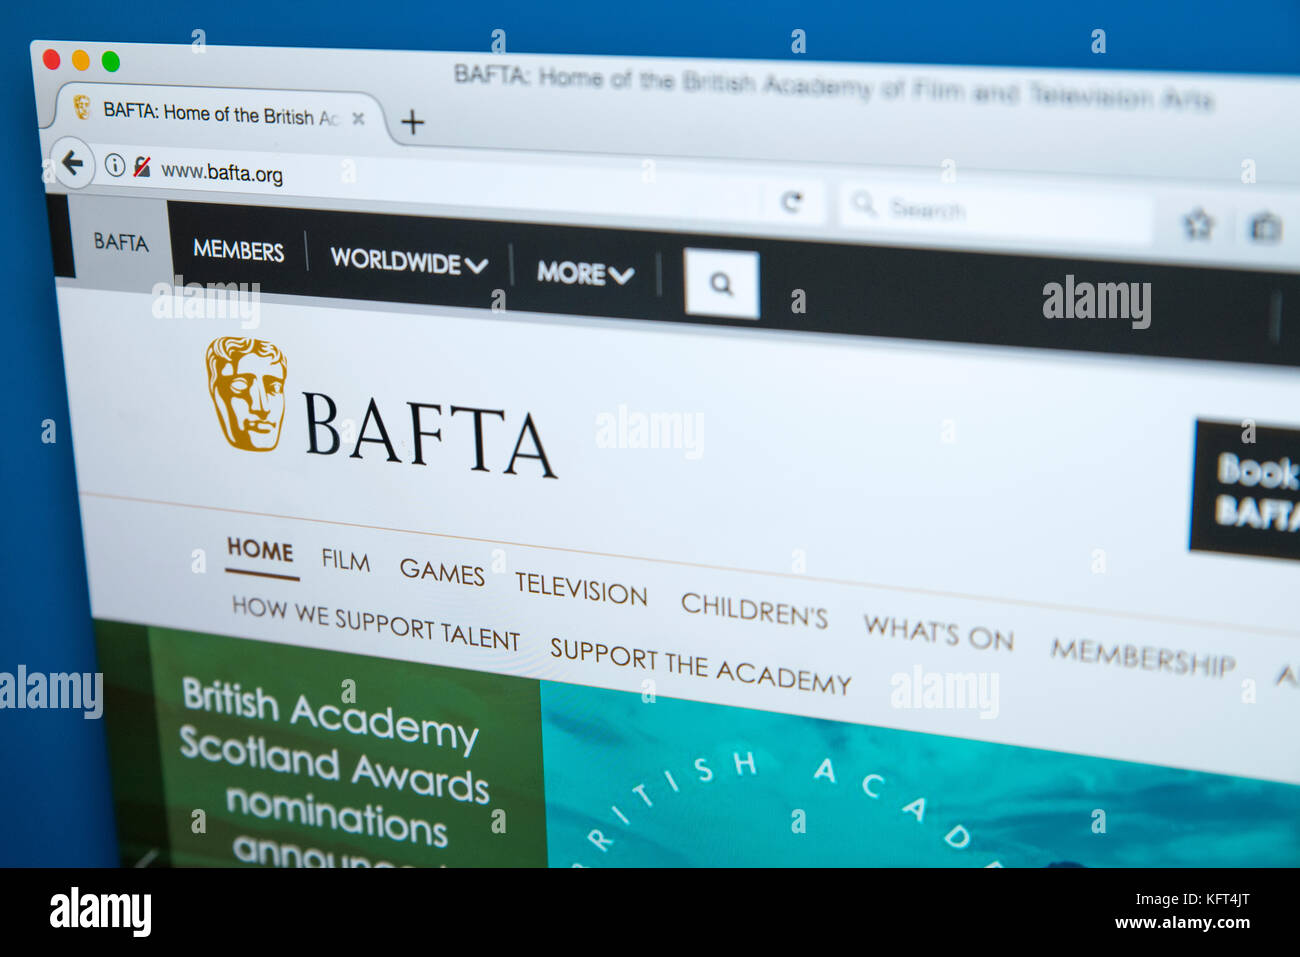 Londres, Royaume-Uni - 17 octobre 2017 : la page d'accueil du site web officiel de la BAFTA - the British Academy of film and television arts, le 17 octobre 2017 Banque D'Images